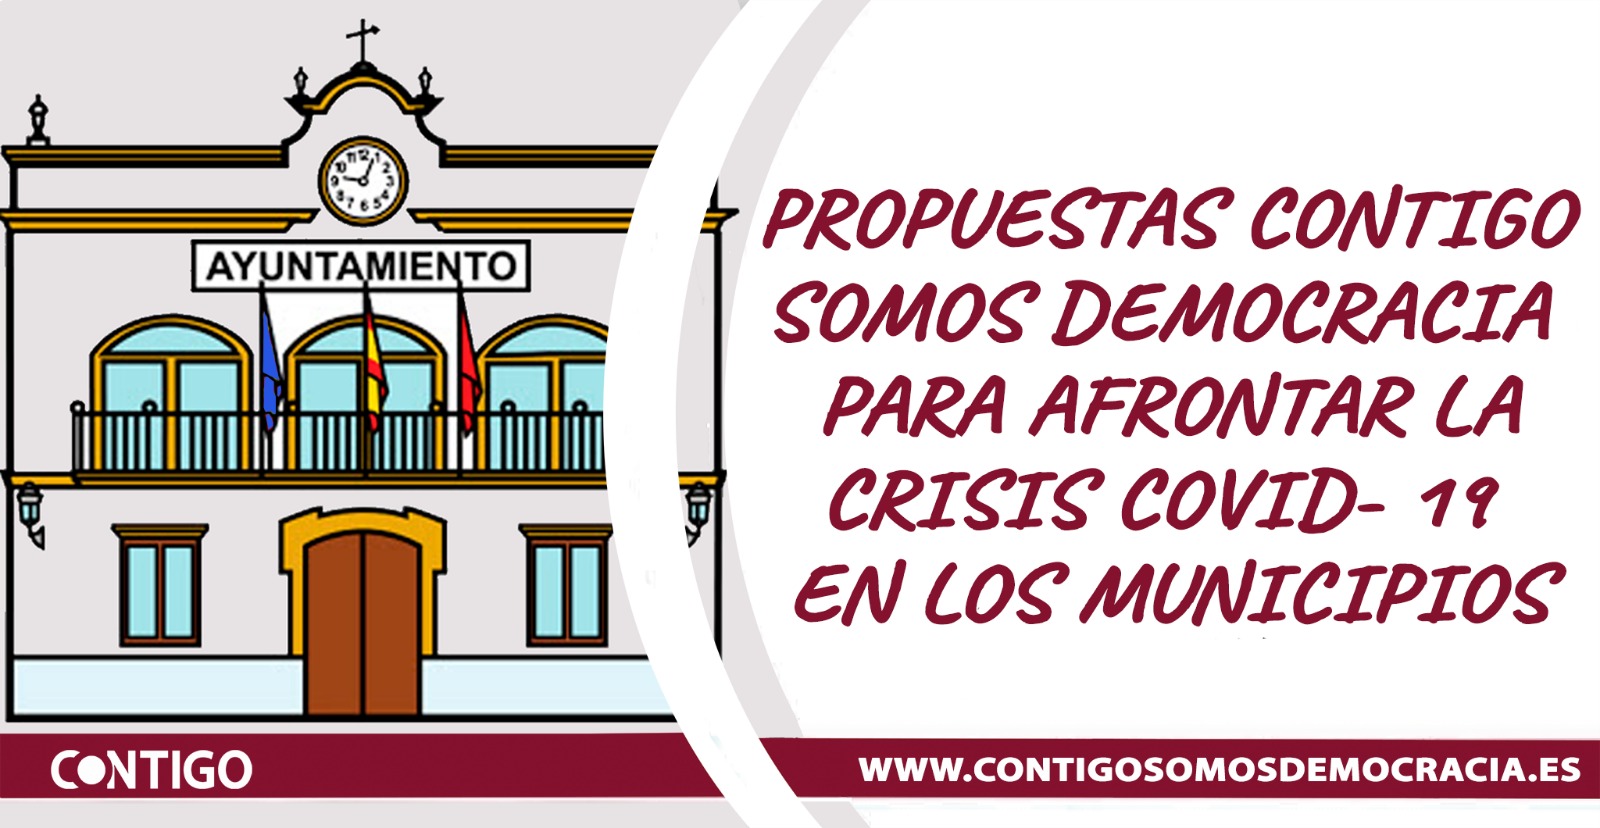 Propuestas de Contigo Somos Democracia para afrontar la crisis del covid-19 en los municipios